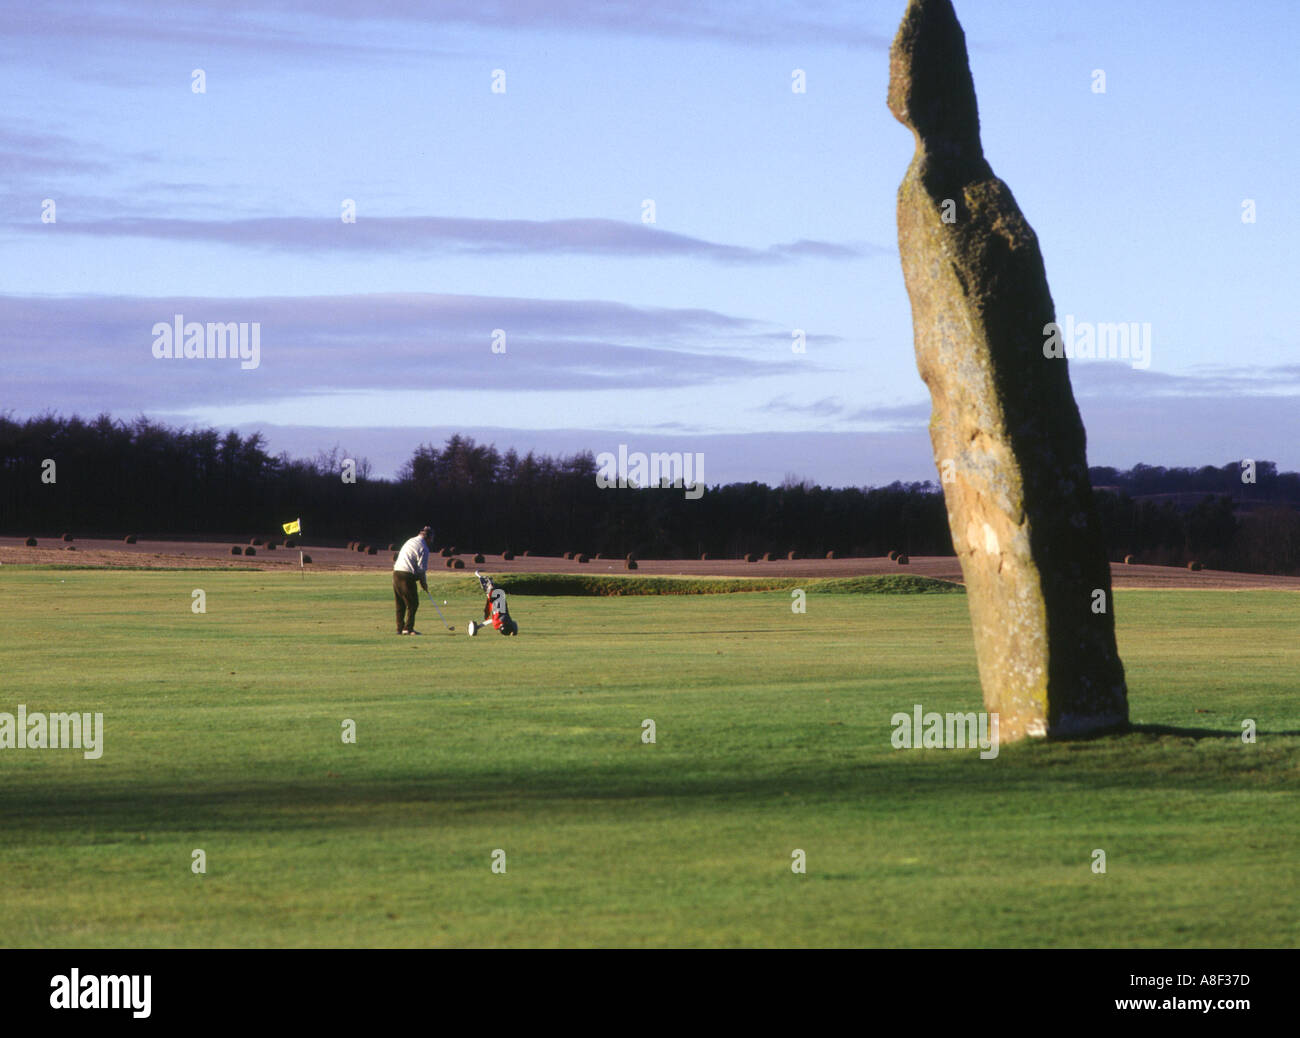 dh Neolítico de piedra de pie LUNDIN ENLACES GOLF FIFE ESCOCIA Escocés Golfista jugando en campos de golf hombre gente Reino Unido Foto de stock